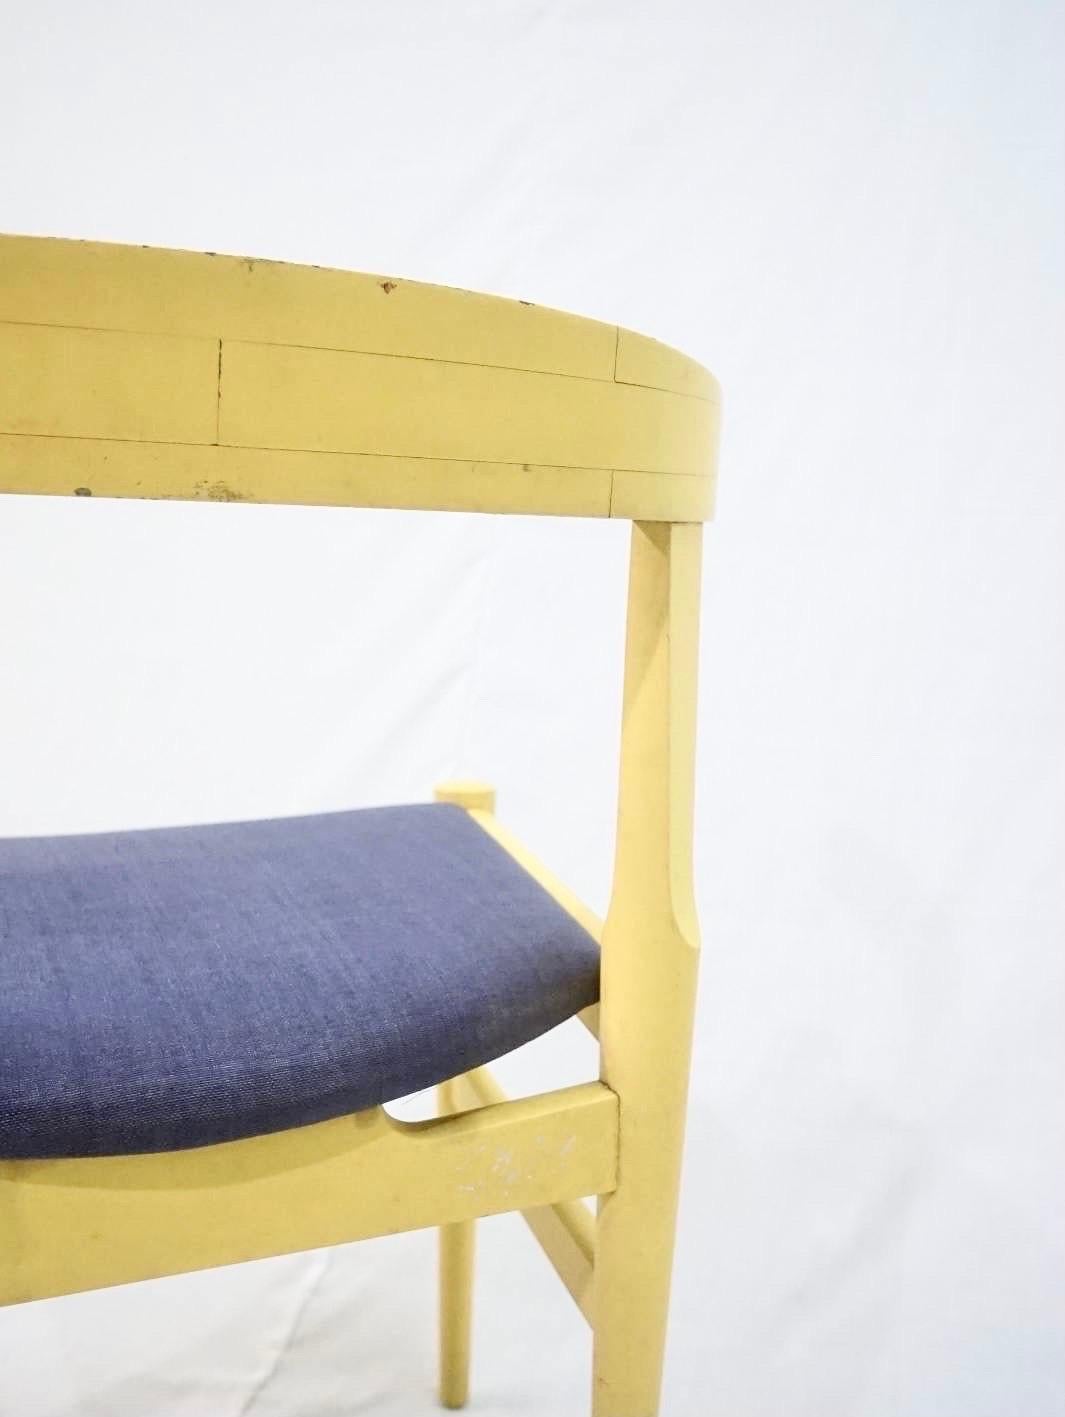 Rare et important prototype Wegner du modèle CH21 en bois peint en jaune d'origine avec le revêtement en vinyle d'origine.

La chaise se trouve dans la maison d'Ella Hansen à Kochsgade, à Odense.
Ella Hansen était l'épouse du fondateur de Carl